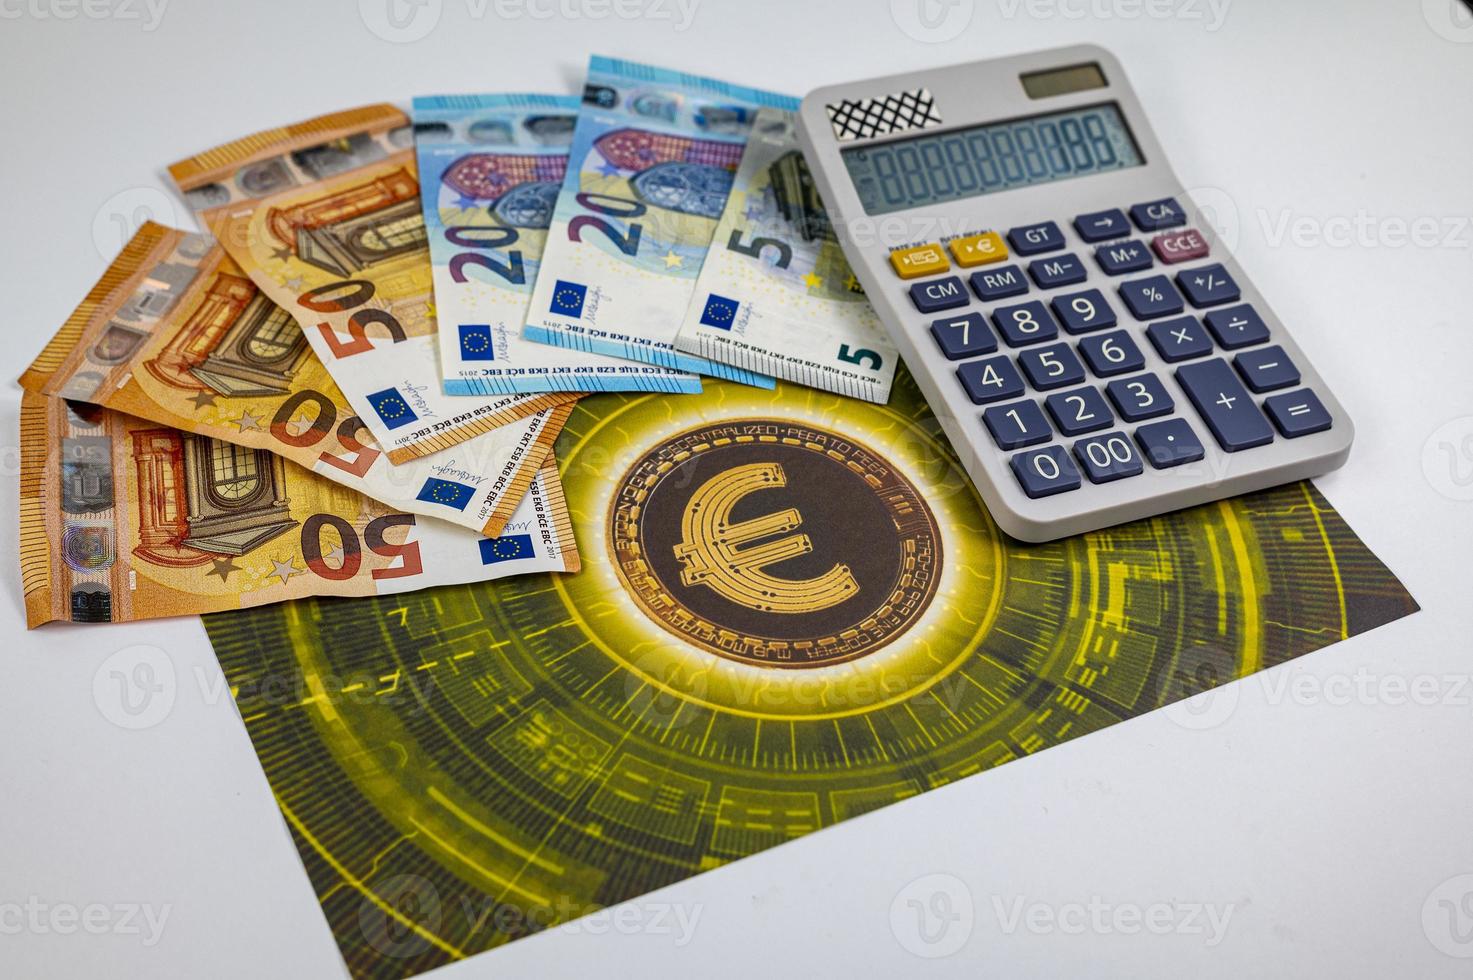 50 20 notas de 5 euros com o símbolo do euro foto